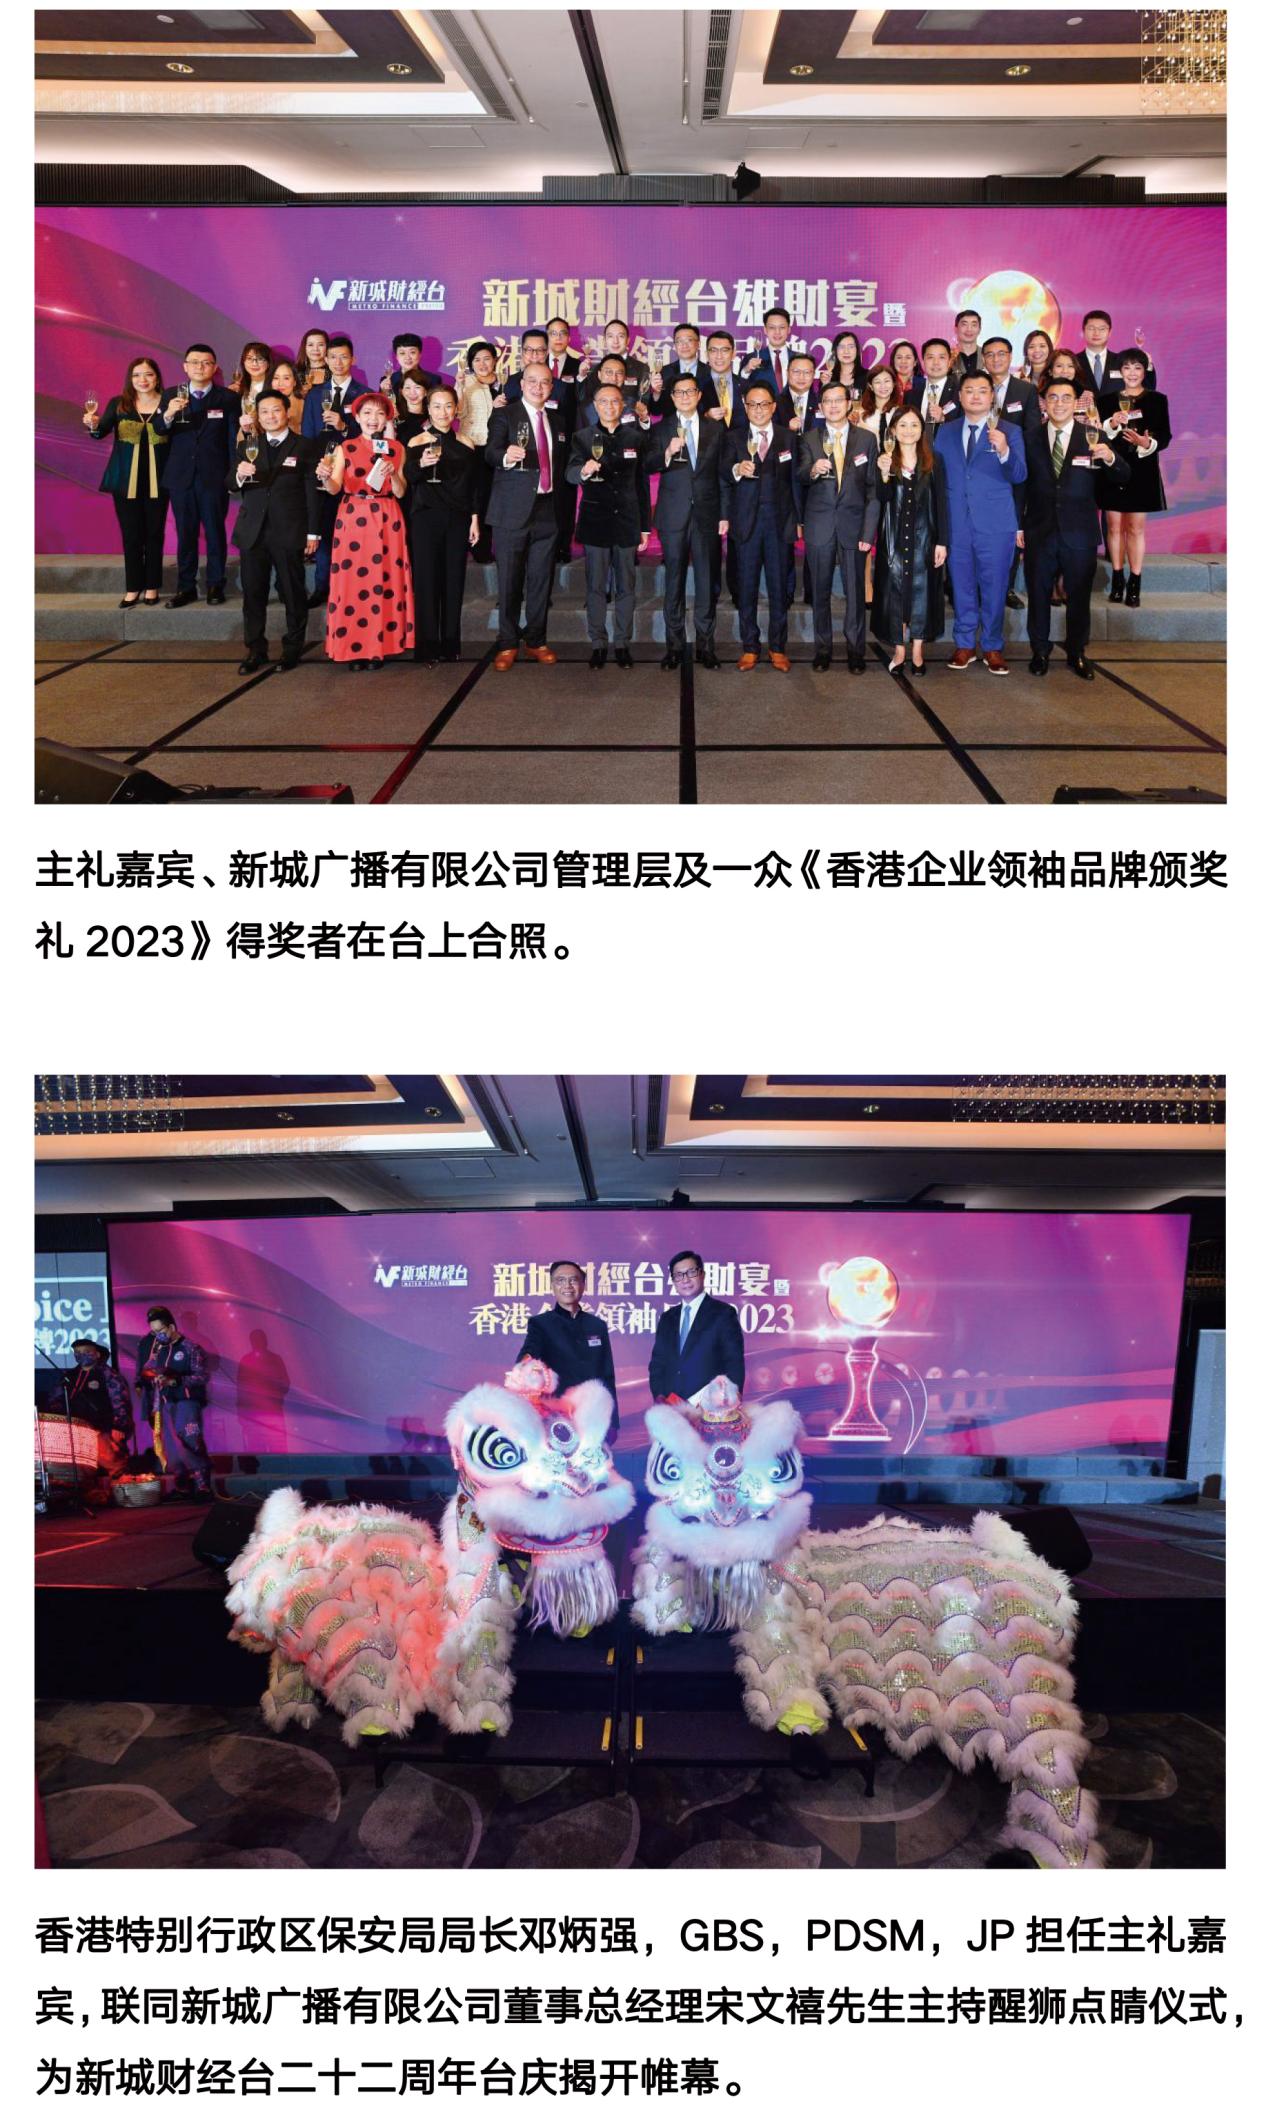 新城財經臺主辦 《香港企業領袖品牌頒獎禮2023》